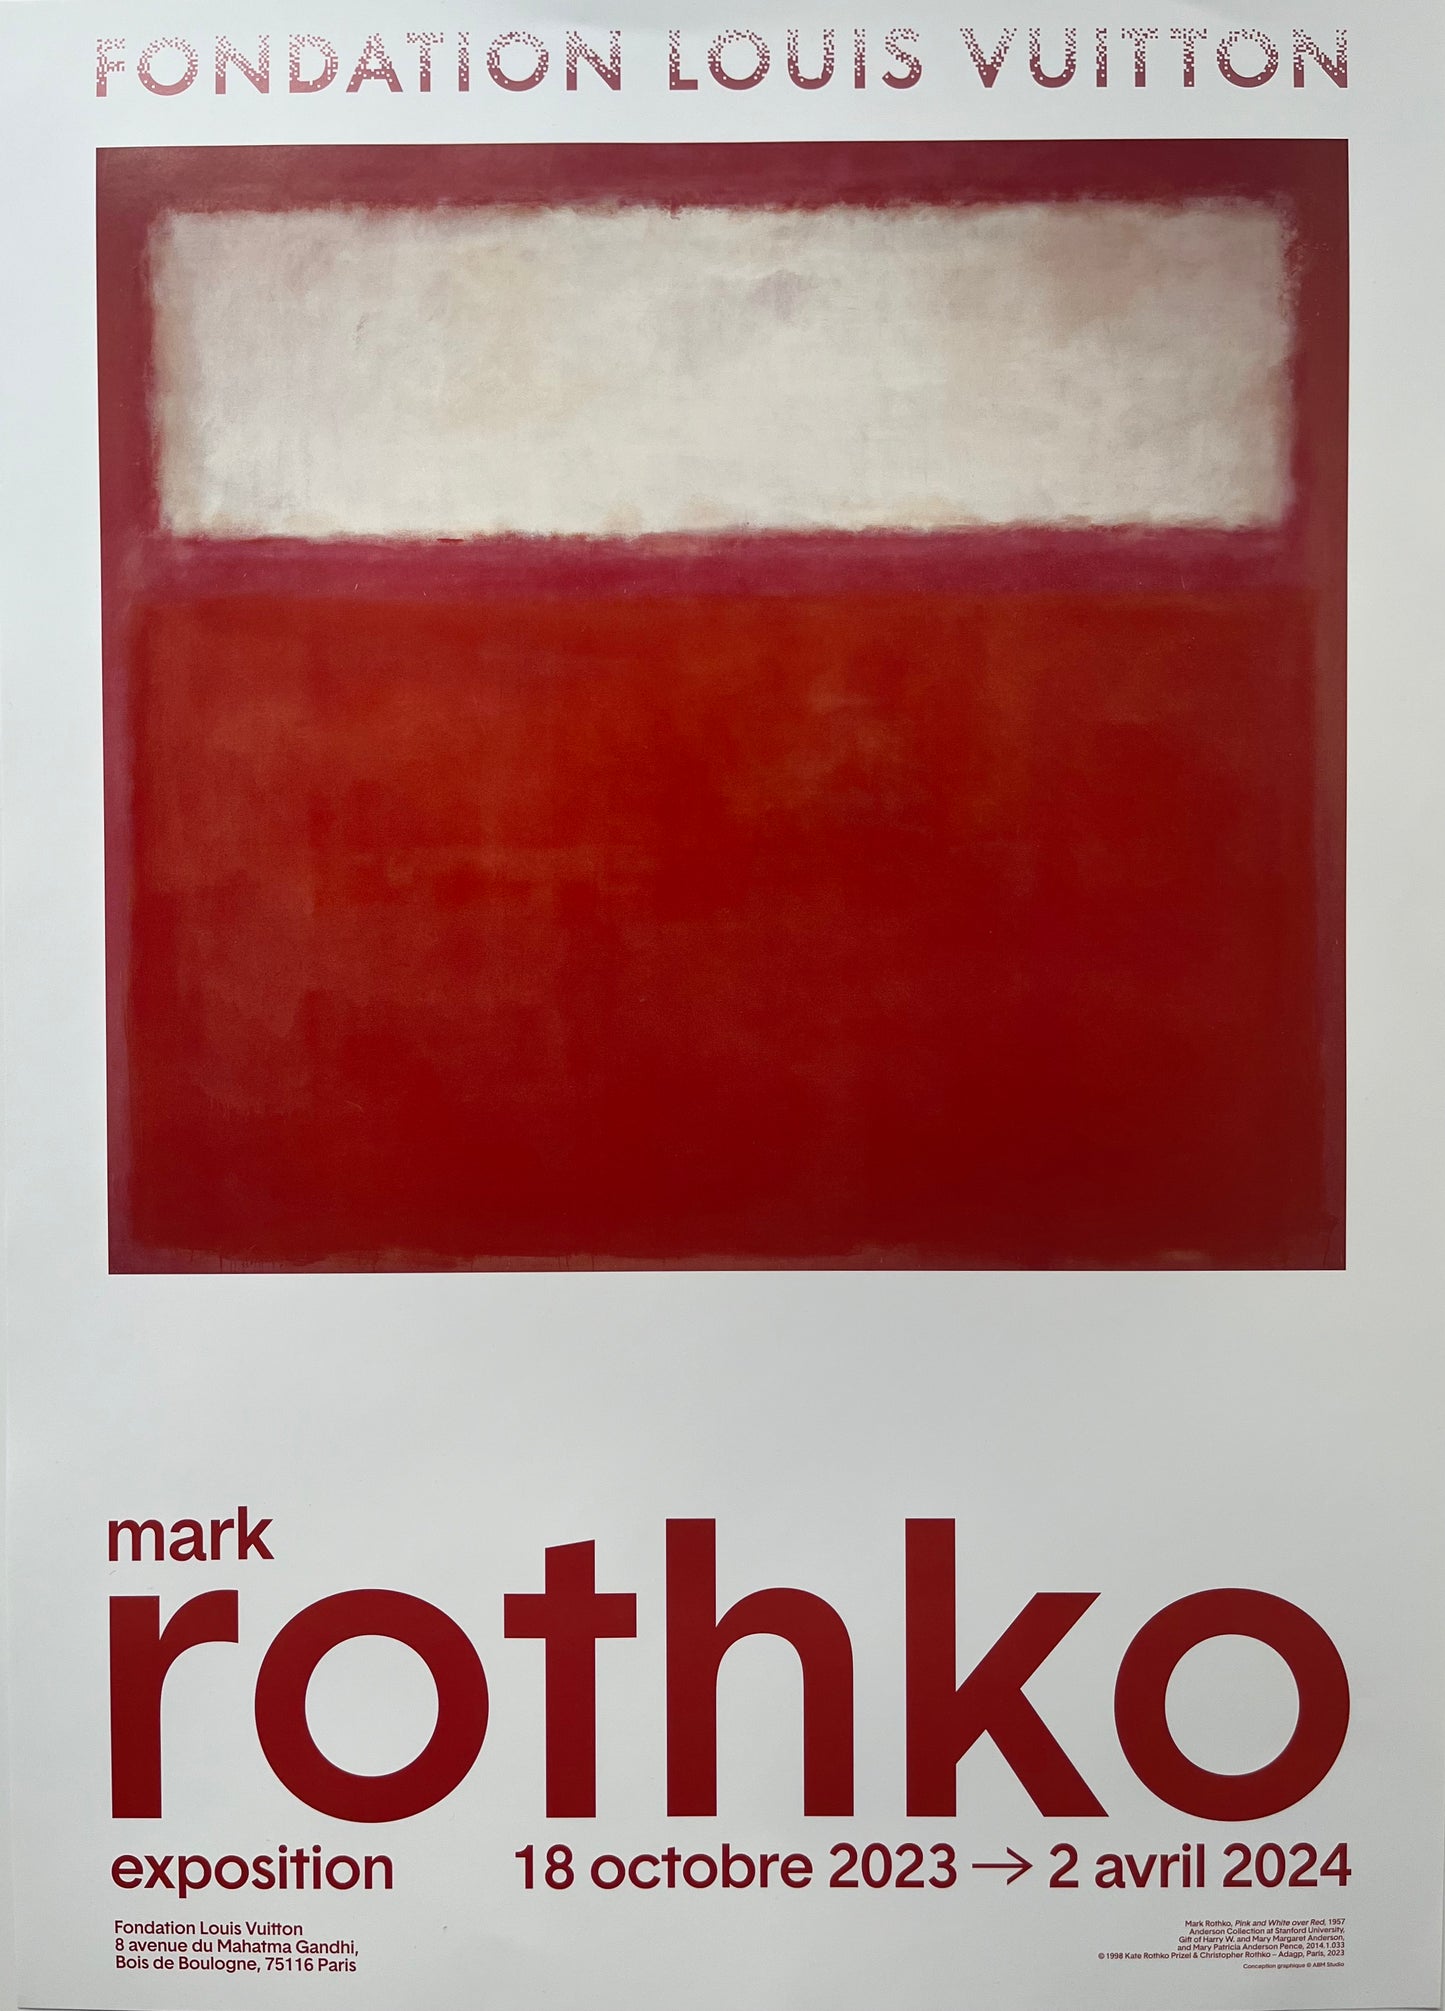 Mark Rothko - Set di 2 poster - FONDAZIONE LOUIS VUITTON - 2023